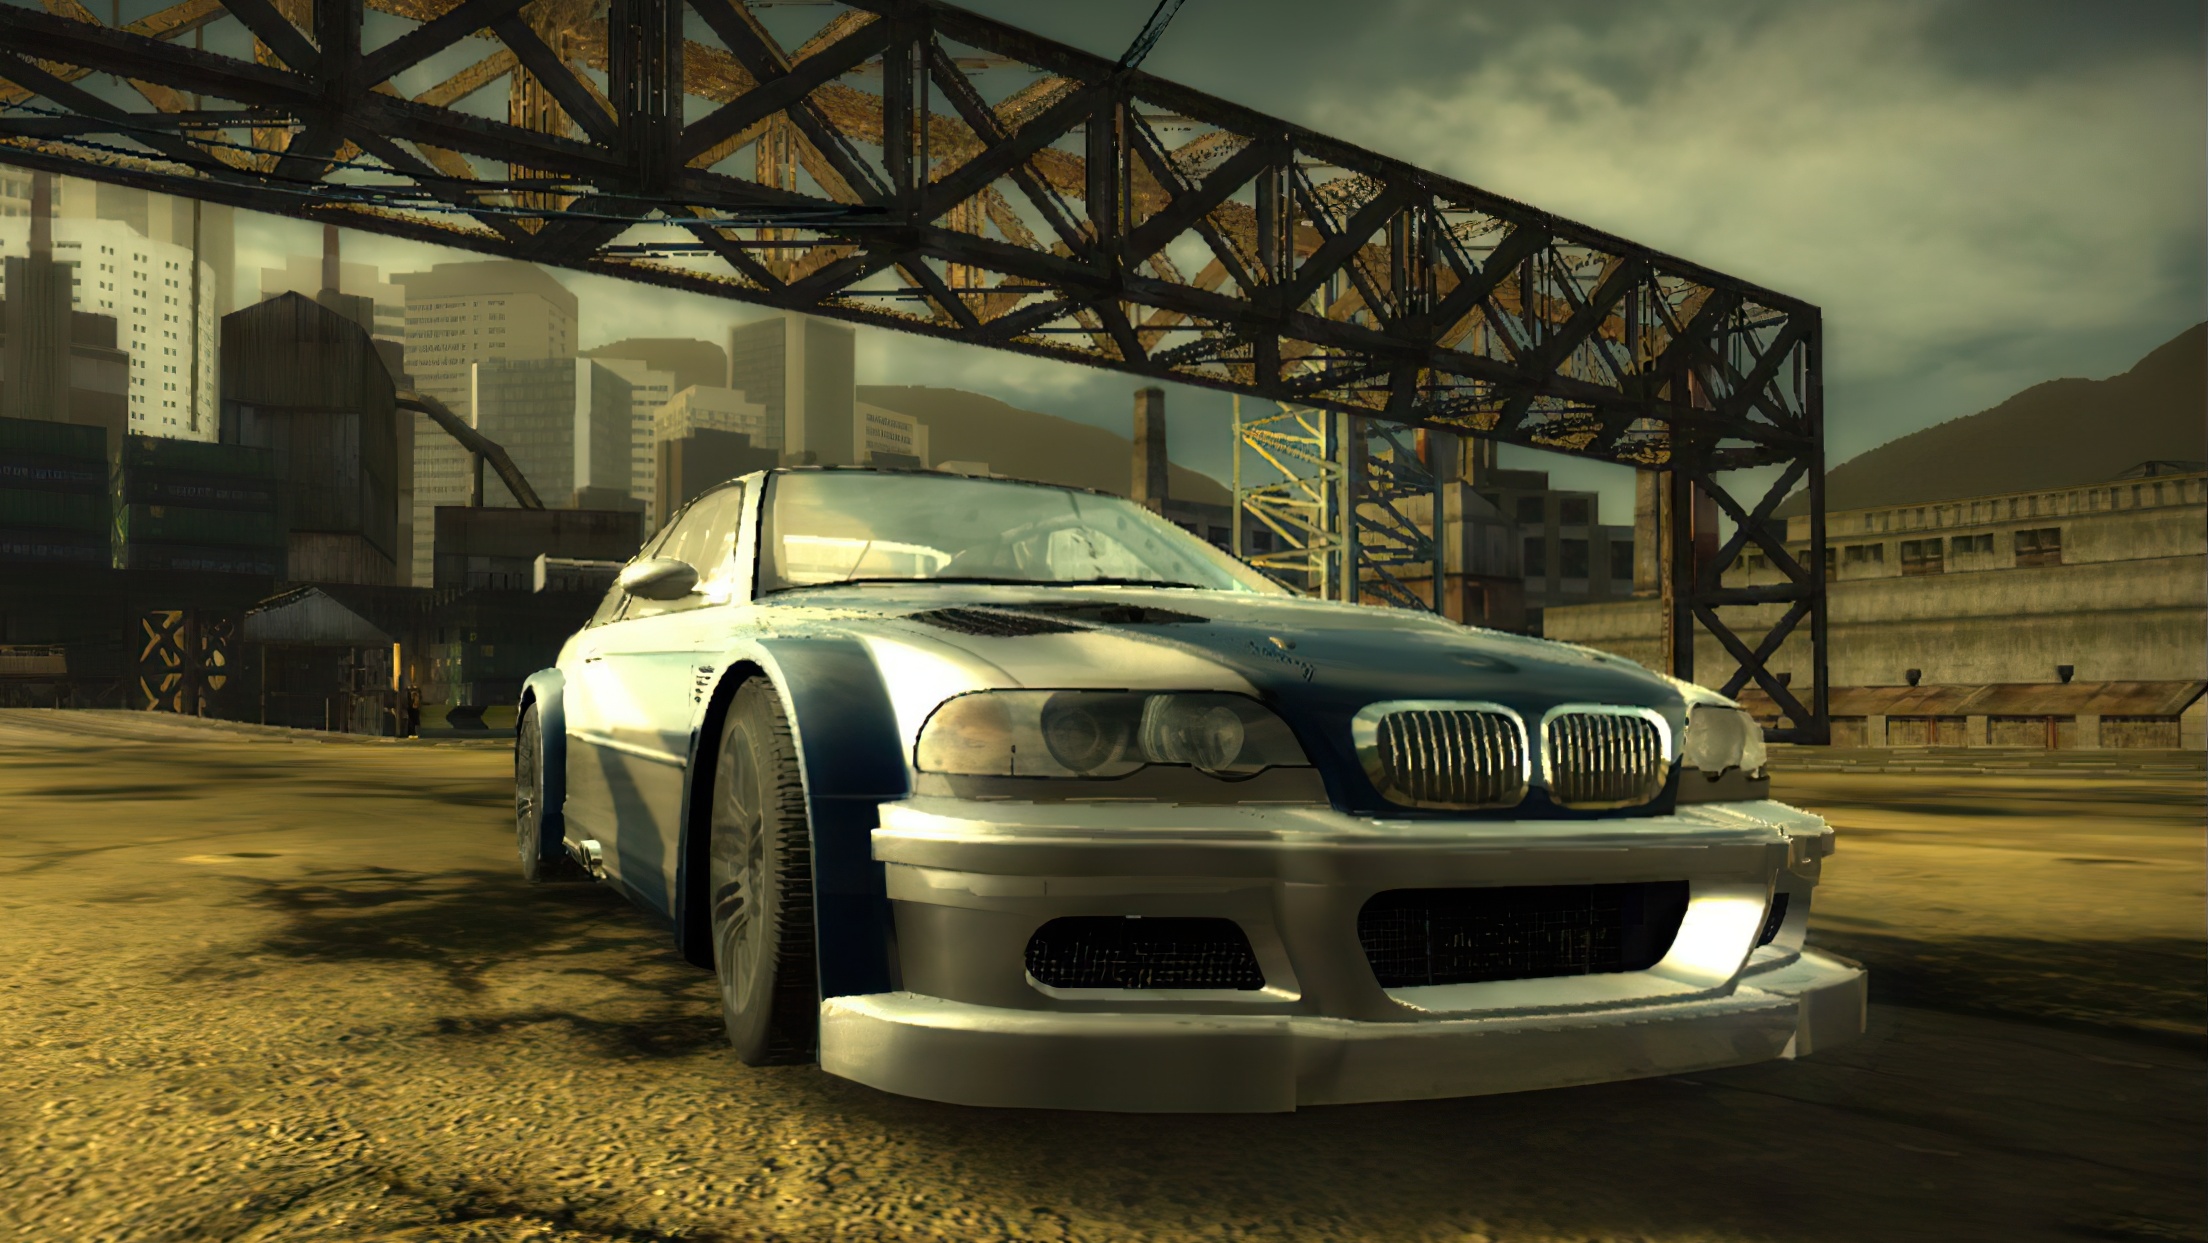 Нед фор спид мост вондет. BMW m3 GTR. Need for Speed most wanted 2005. Нид фор СПИД most wanted 2005. Нфс МВ 2005.